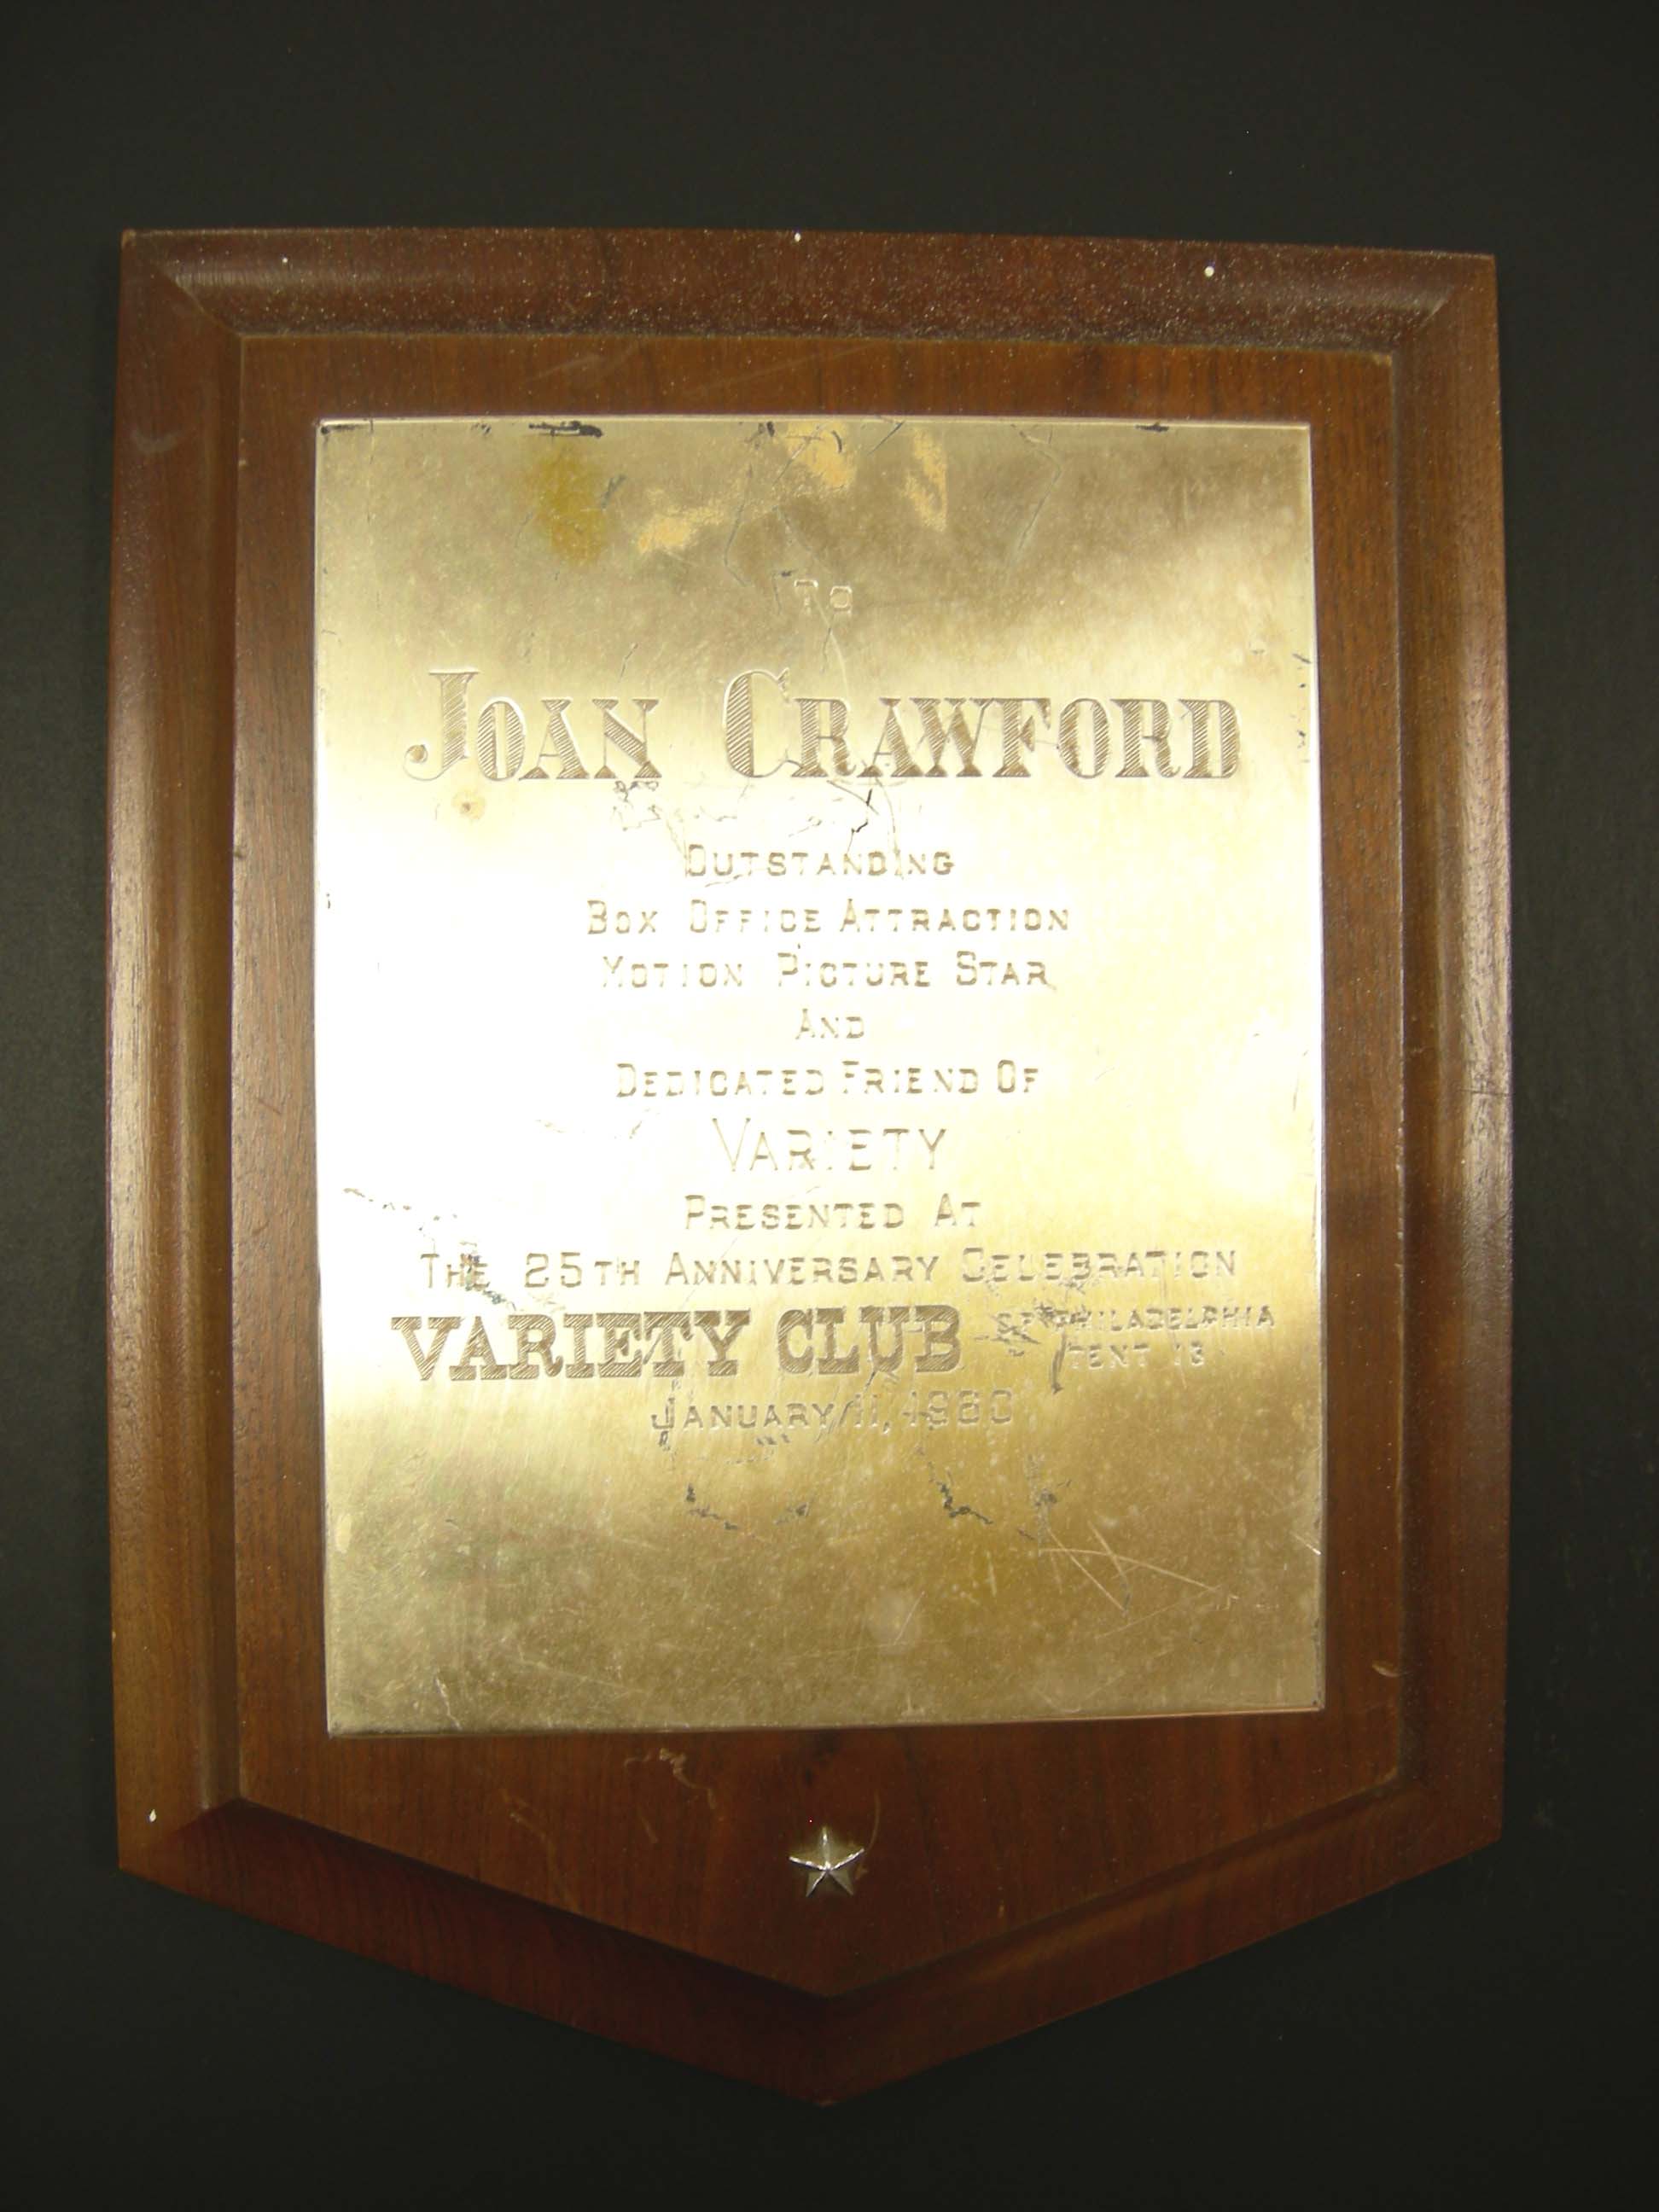 Award Plaque